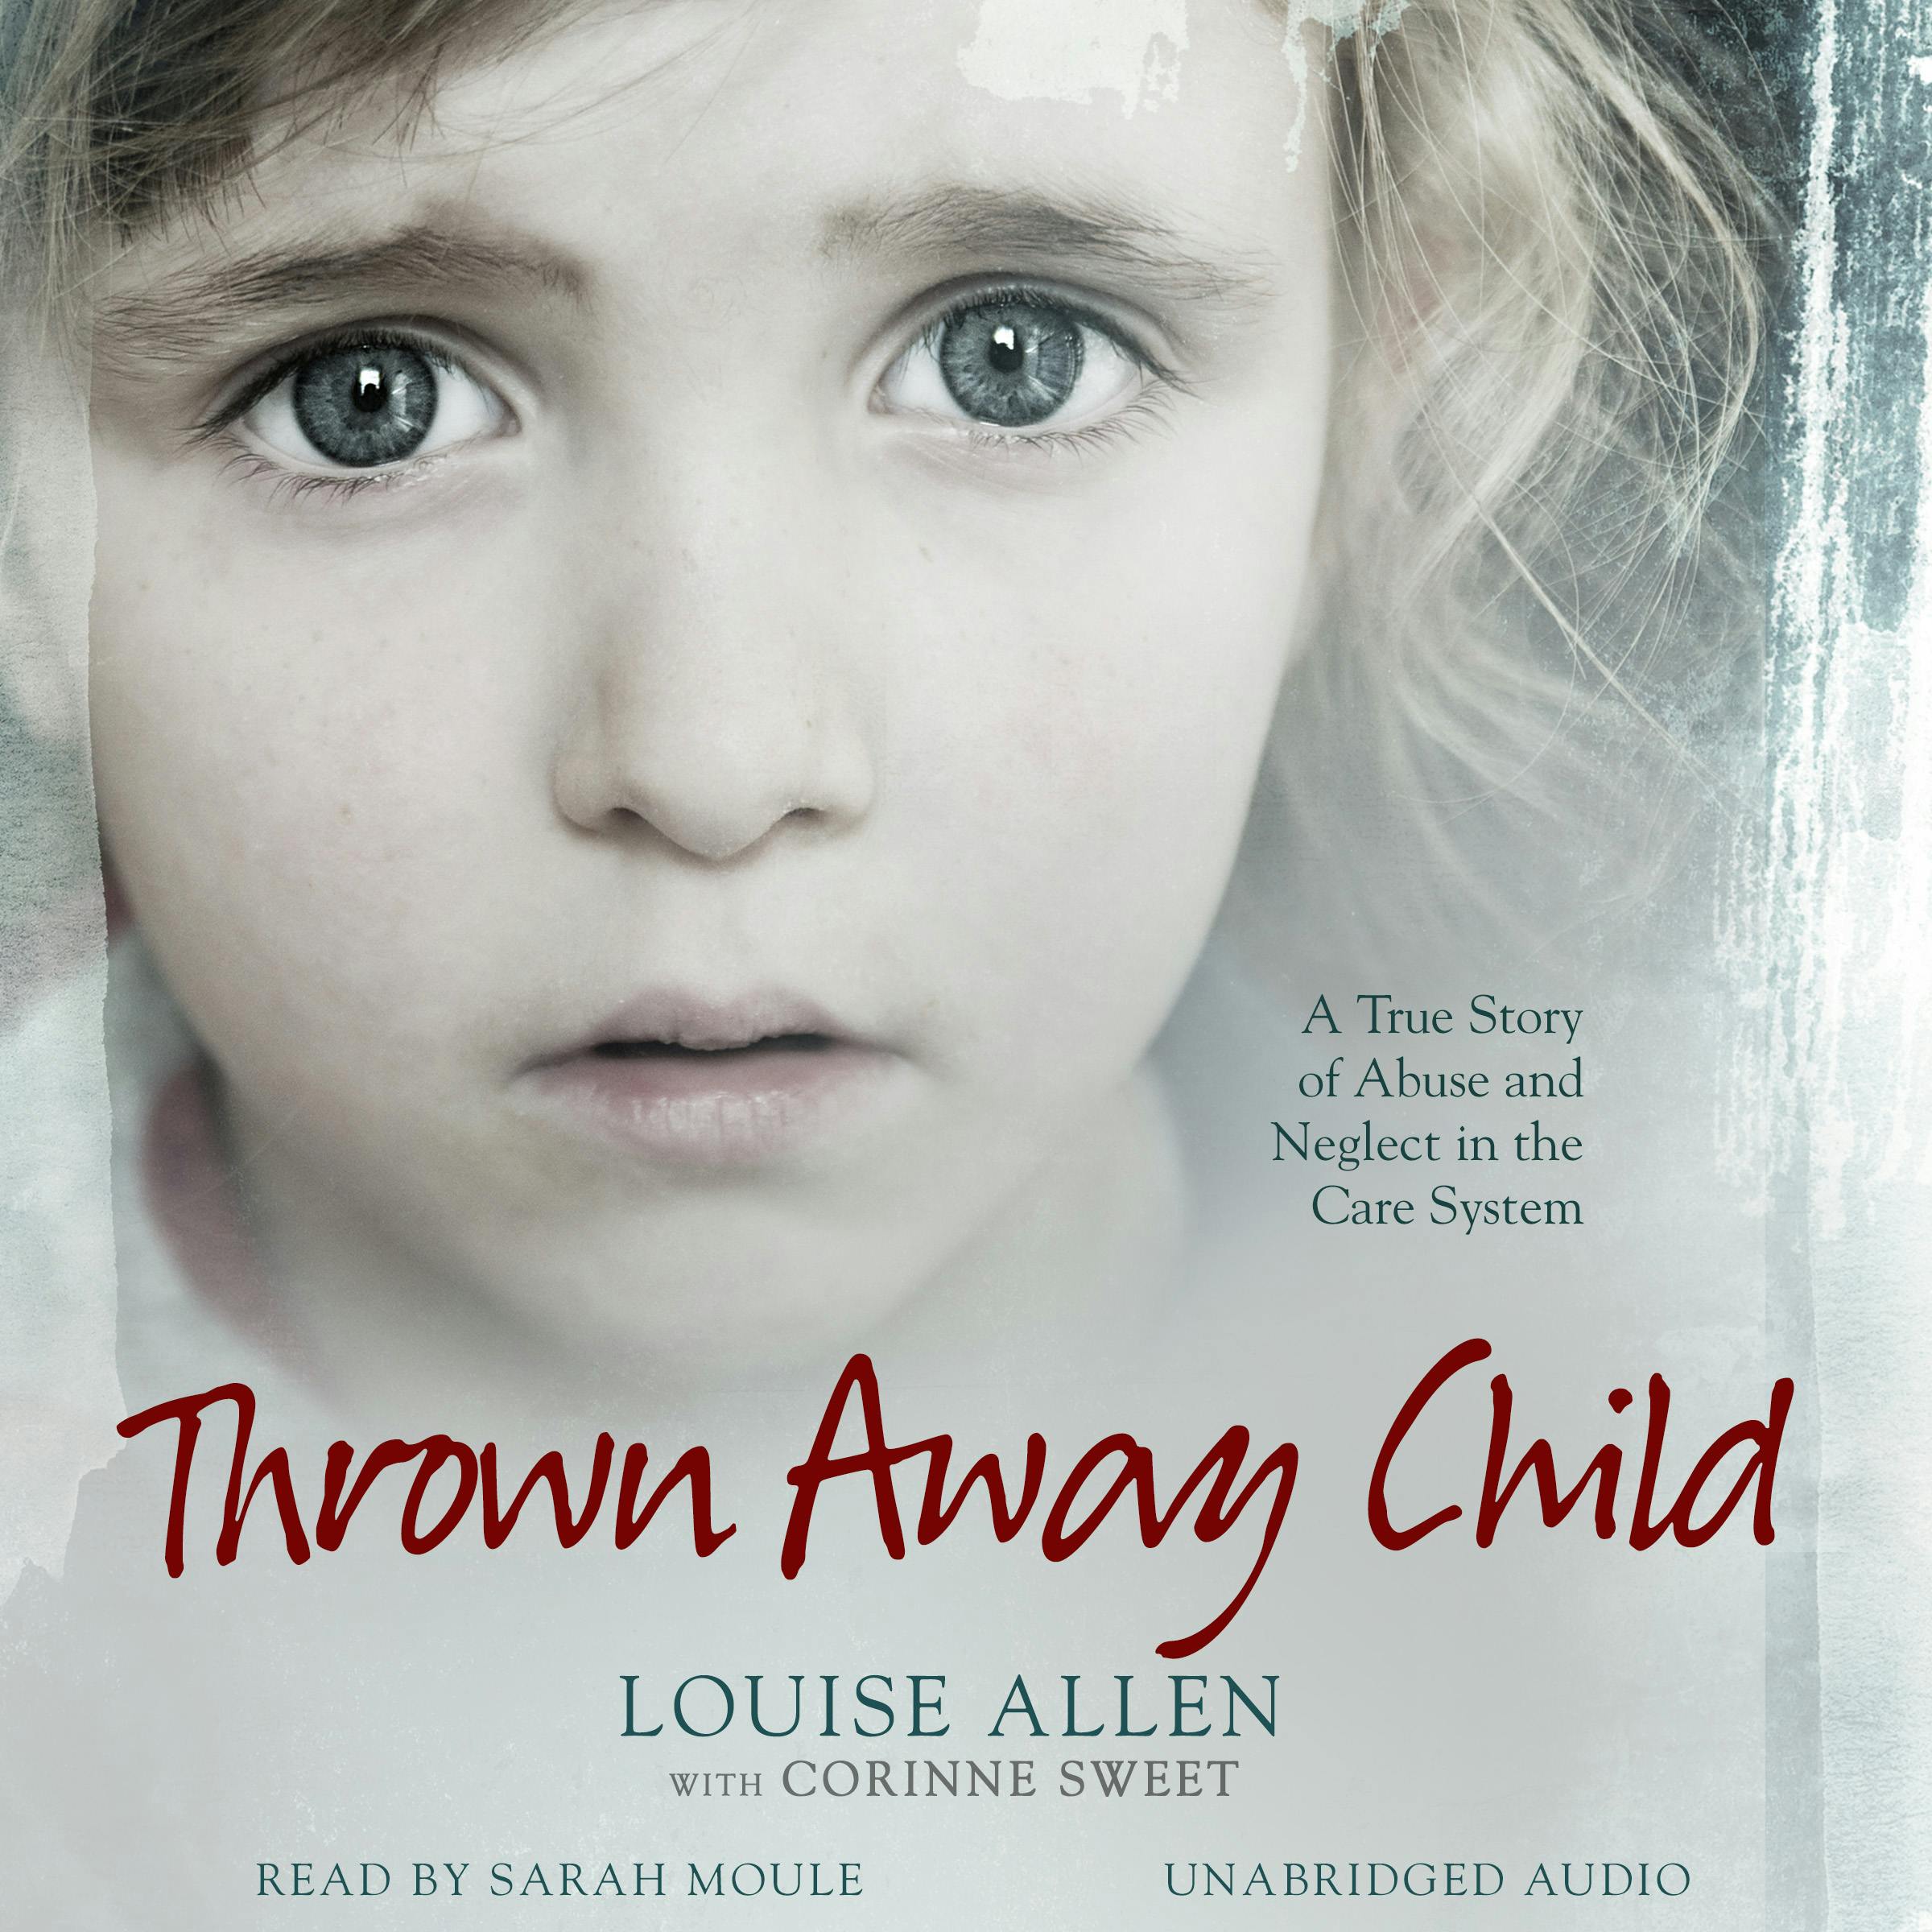 Thrown Away Child - Louise Allen